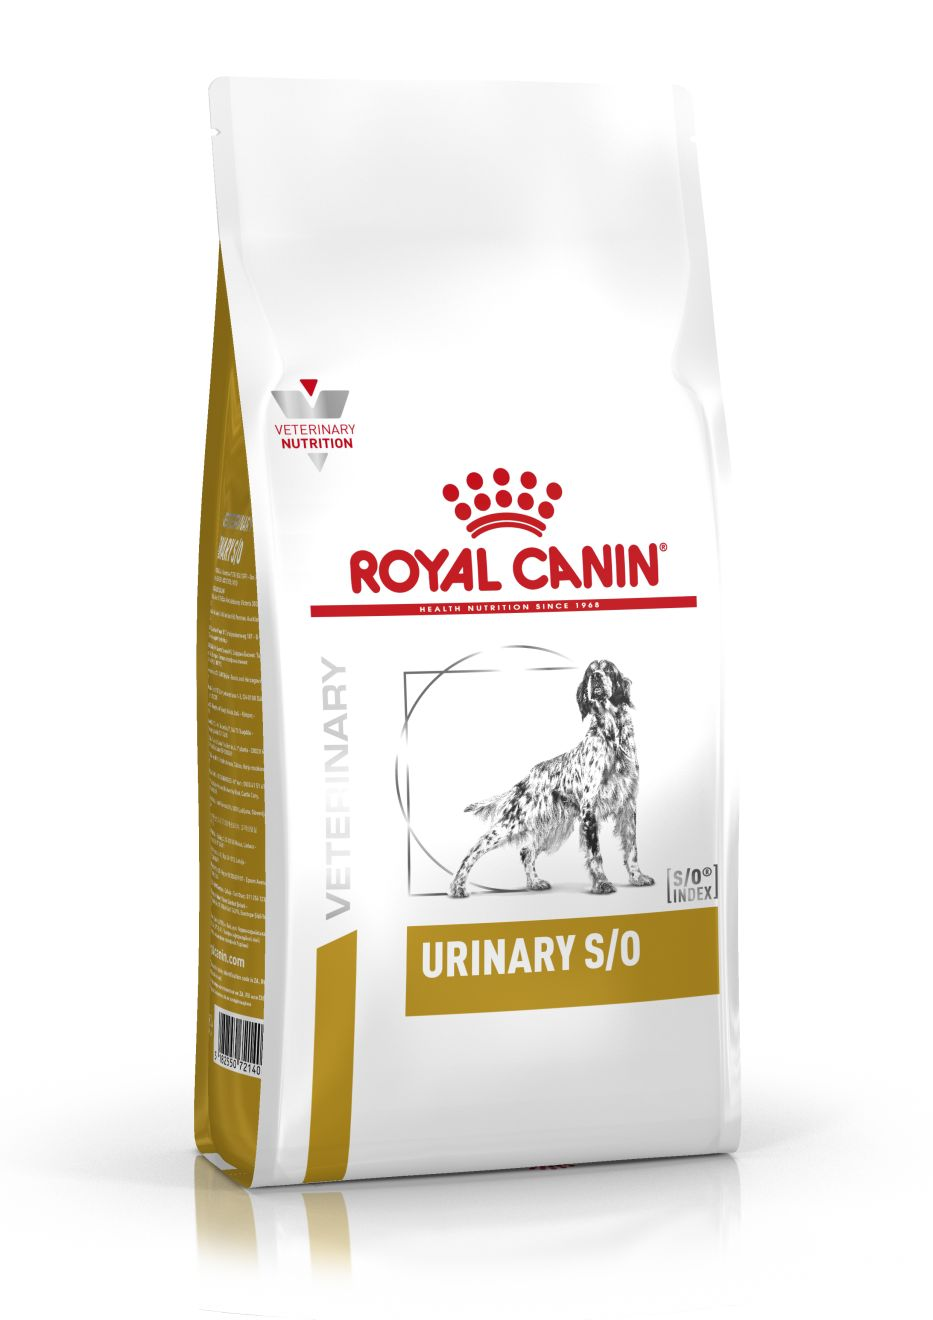 urinary dog royal canin